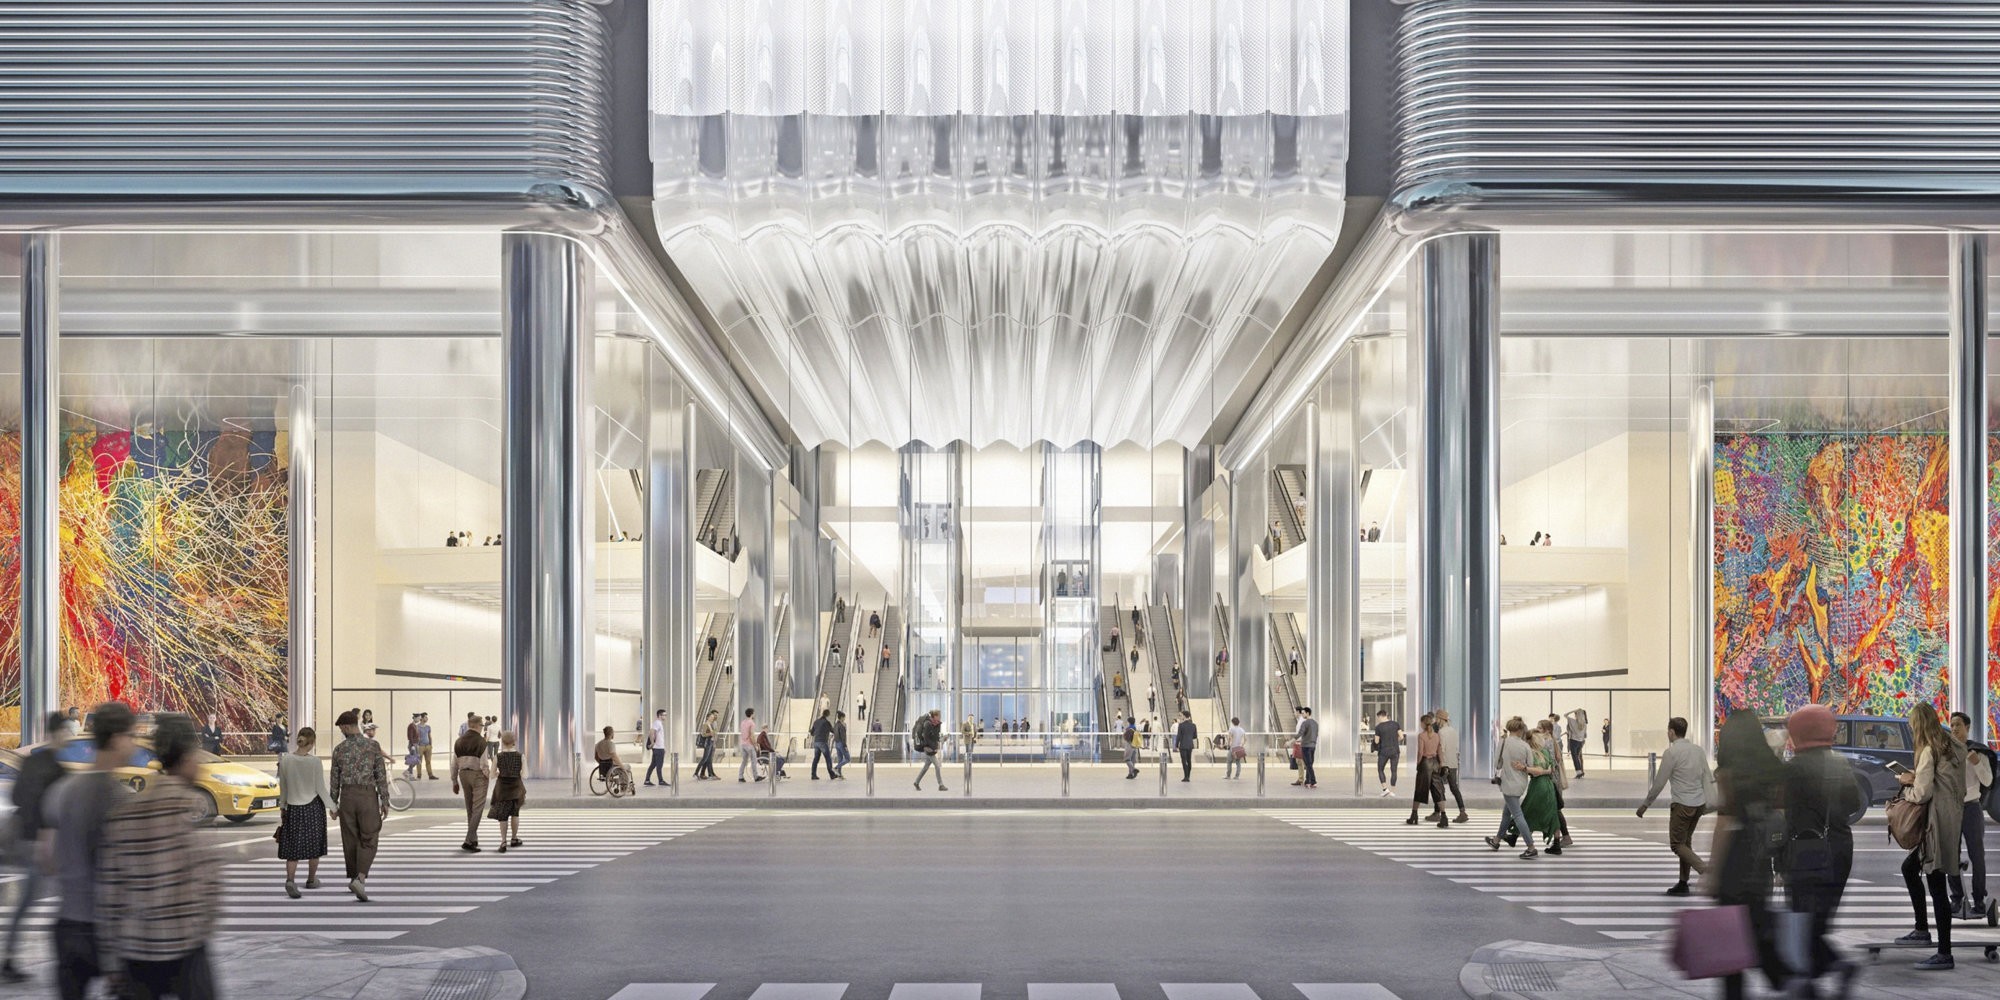 Le nouveau terminal s'articule autour d'un atrium moderne, durable et baigné de lumière.